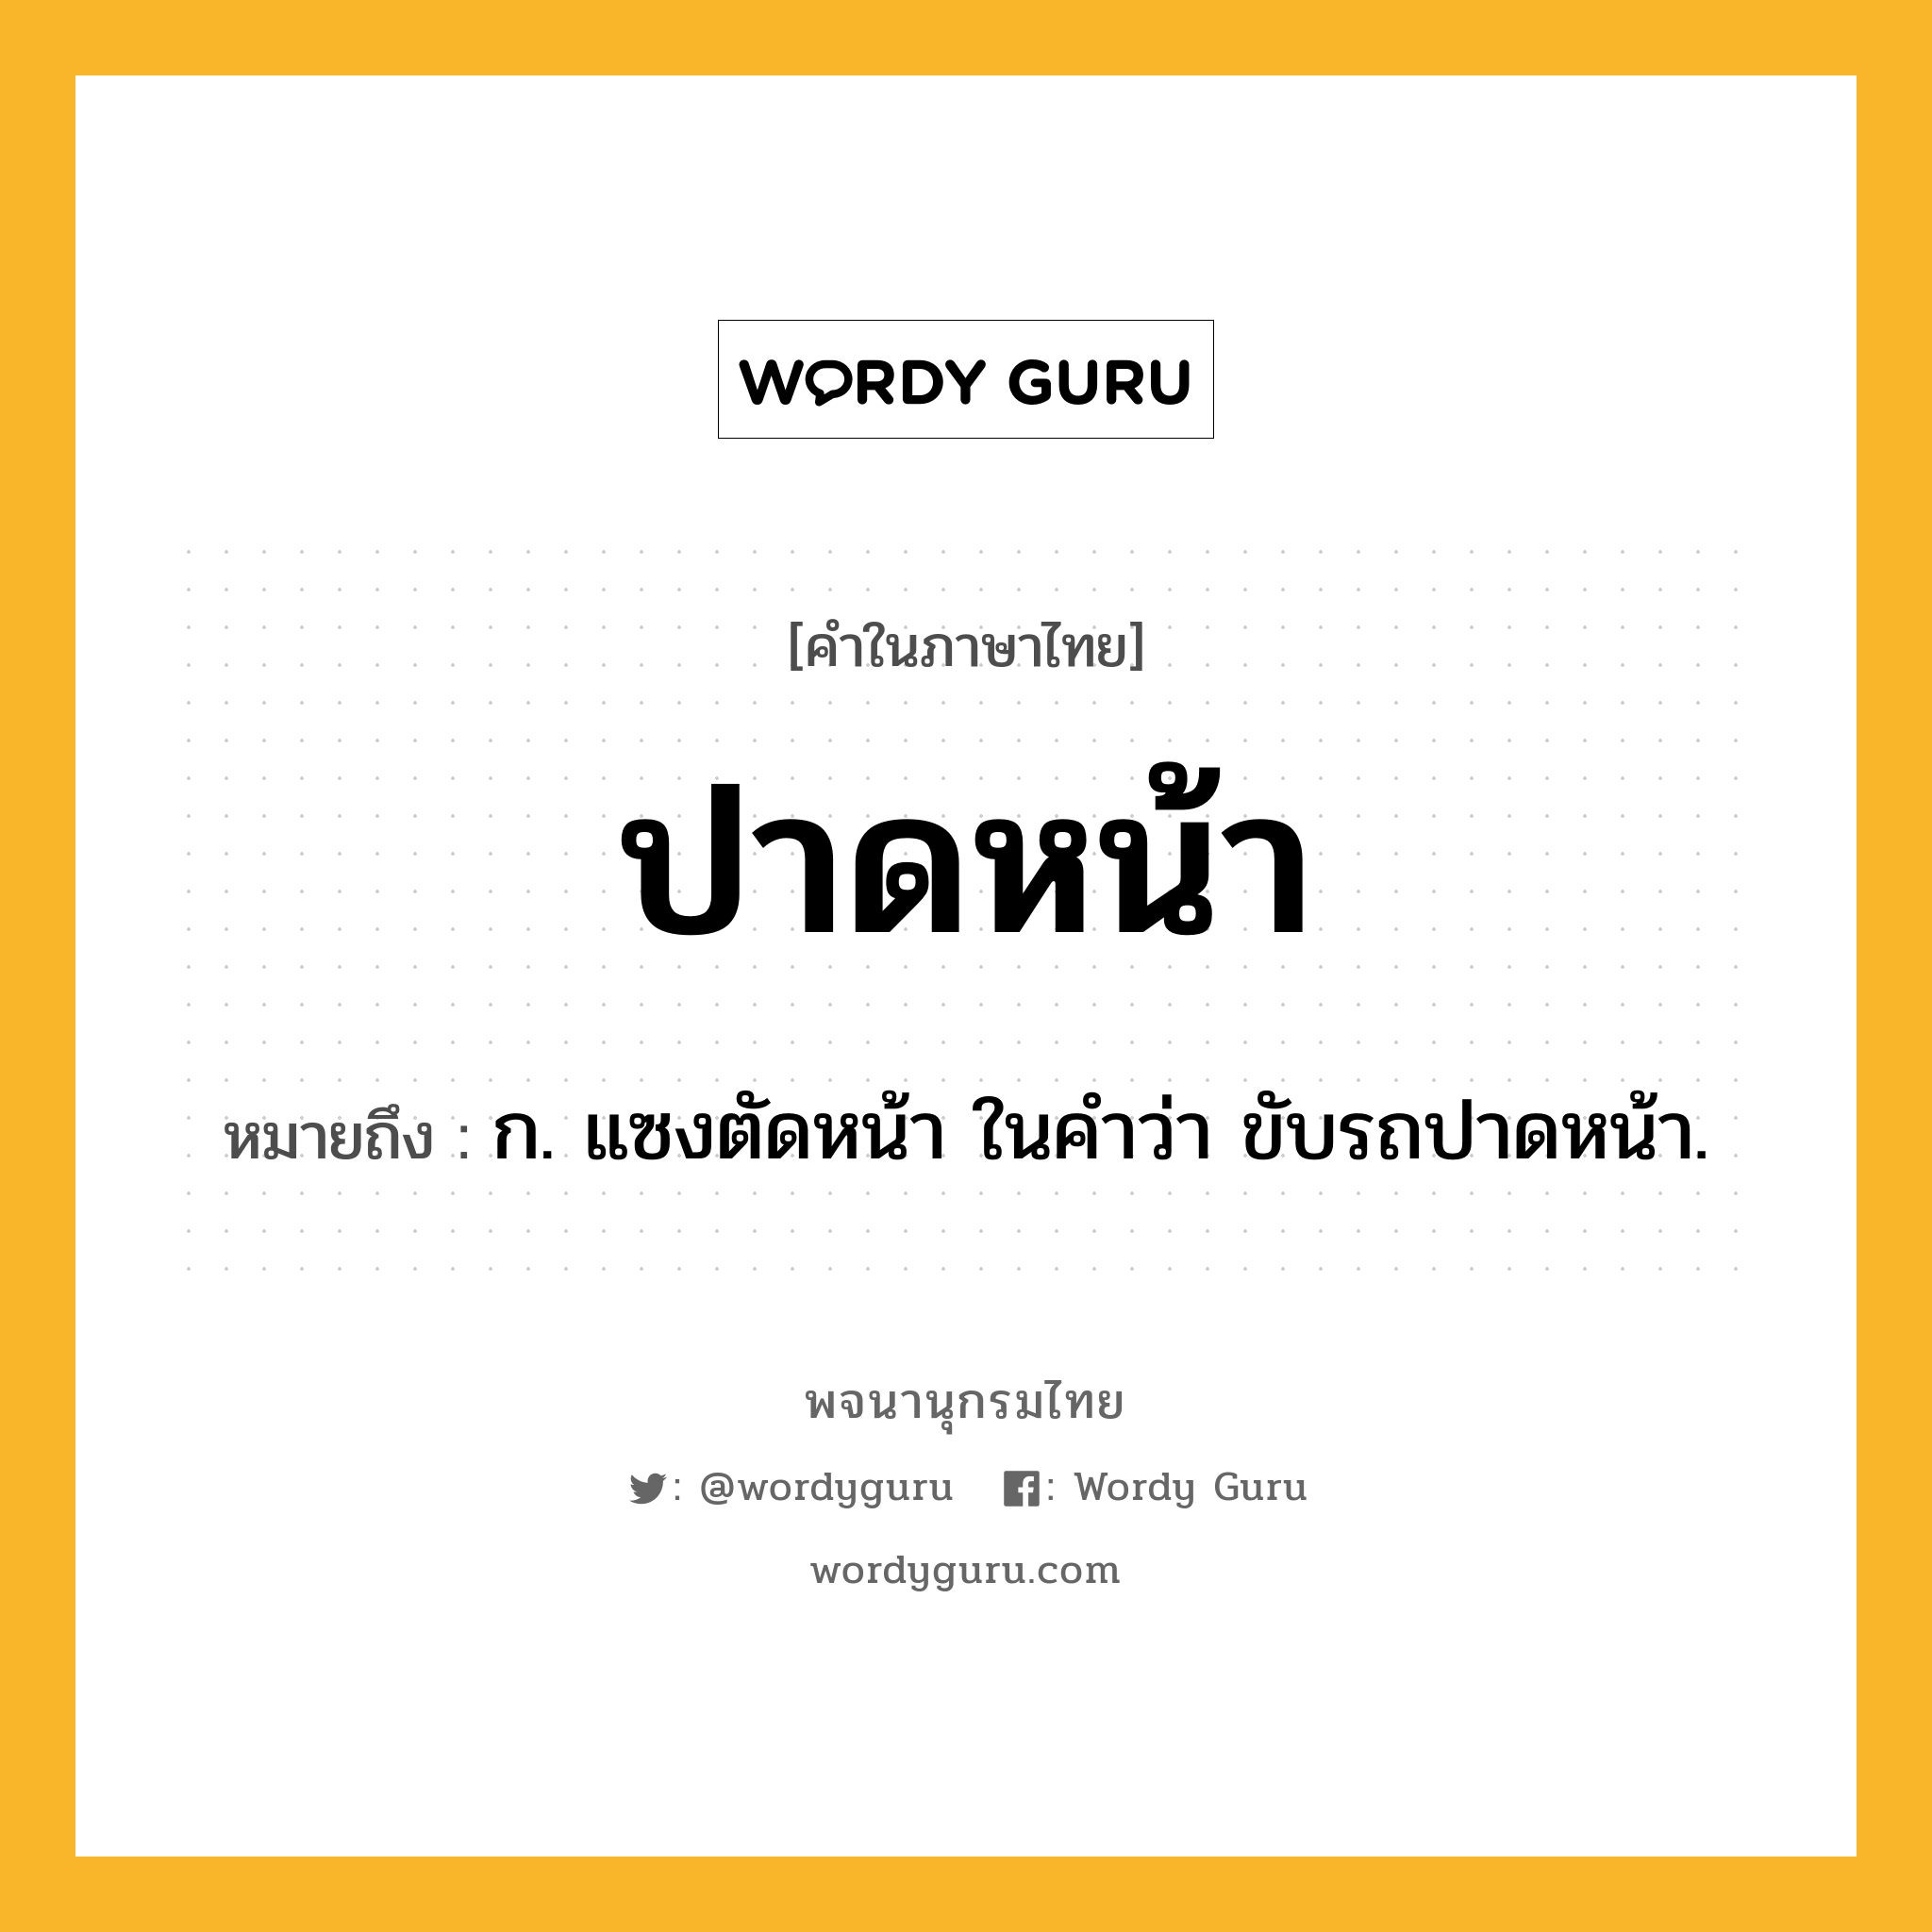 ปาดหน้า ความหมาย หมายถึงอะไร?, คำในภาษาไทย ปาดหน้า หมายถึง ก. แซงตัดหน้า ในคำว่า ขับรถปาดหน้า.